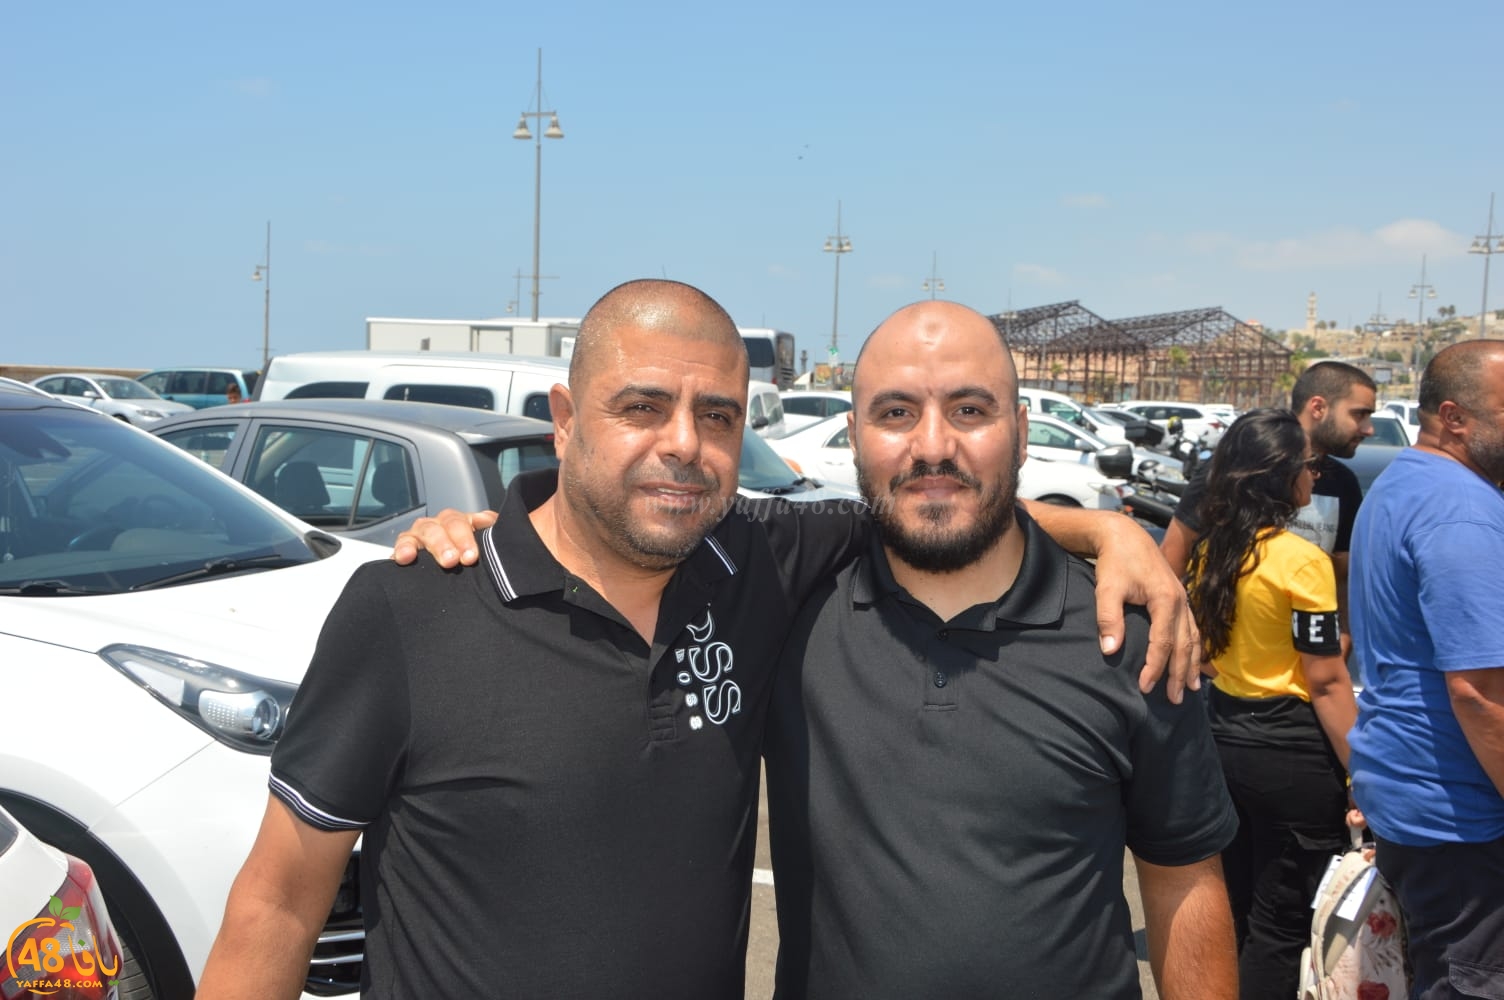  بالصور: إنطلاق حجاج بيت الله الحرام من مدينة يافا إلى الديار الحجازية